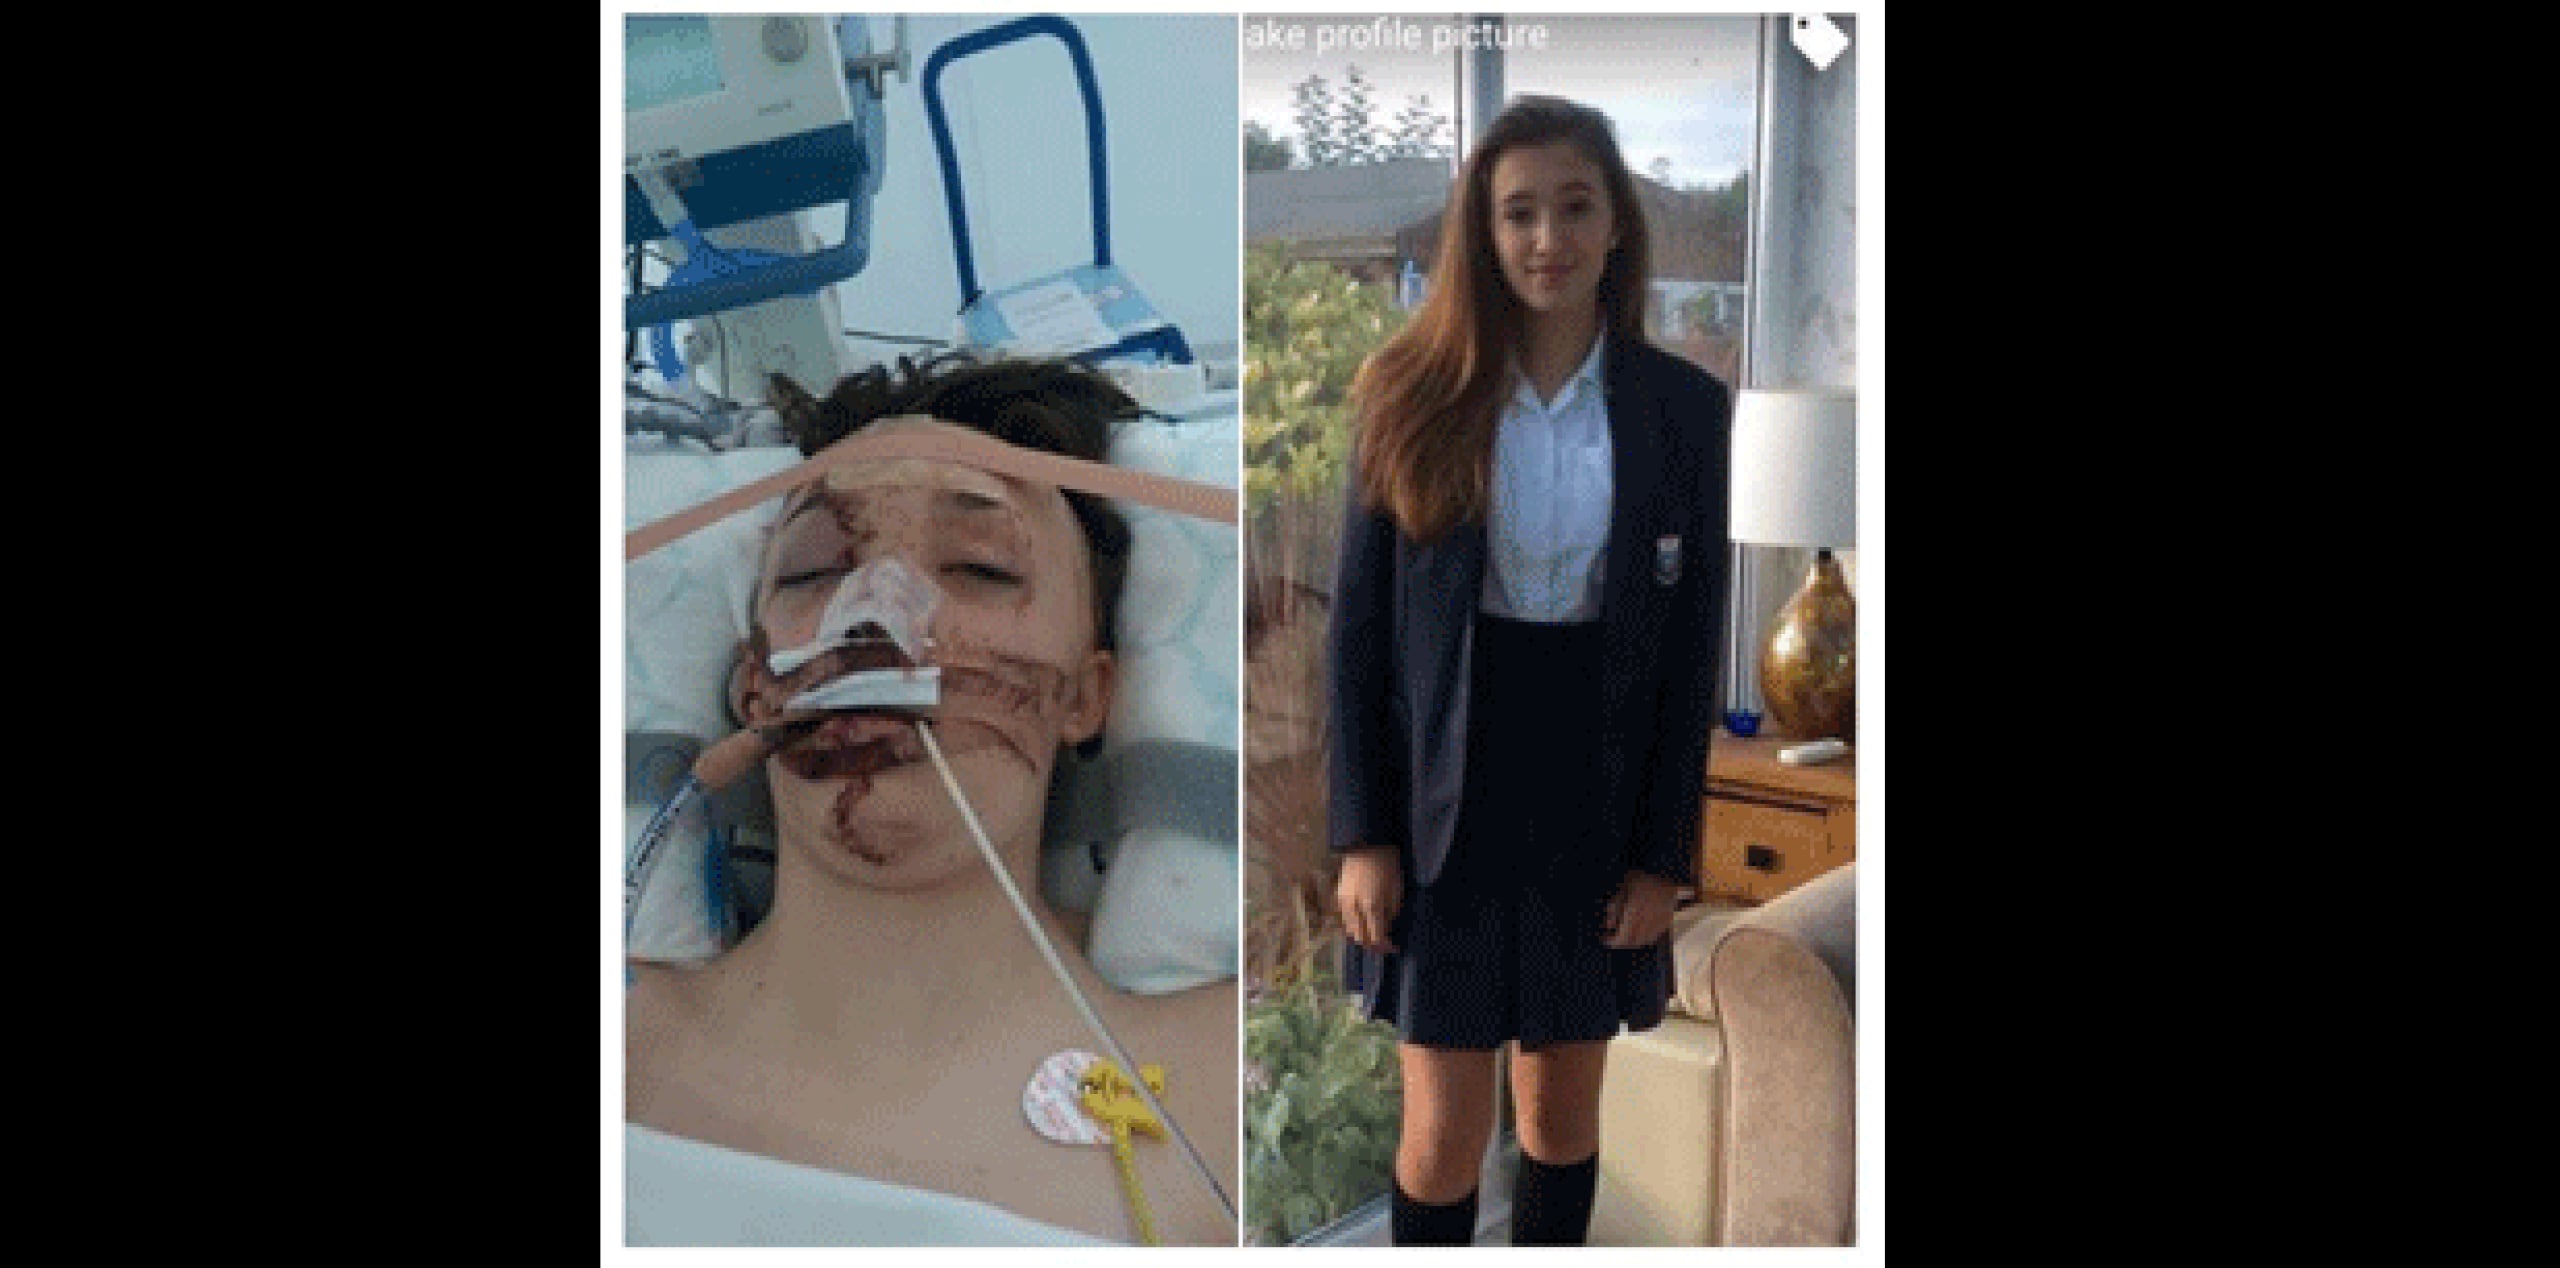 La joven fue trasladada en helicóptero al hospital Alder Hey de niños, en Liverpool, con lesiones en la cabeza y permanece en estado crítico, pero estable. (Facebook)